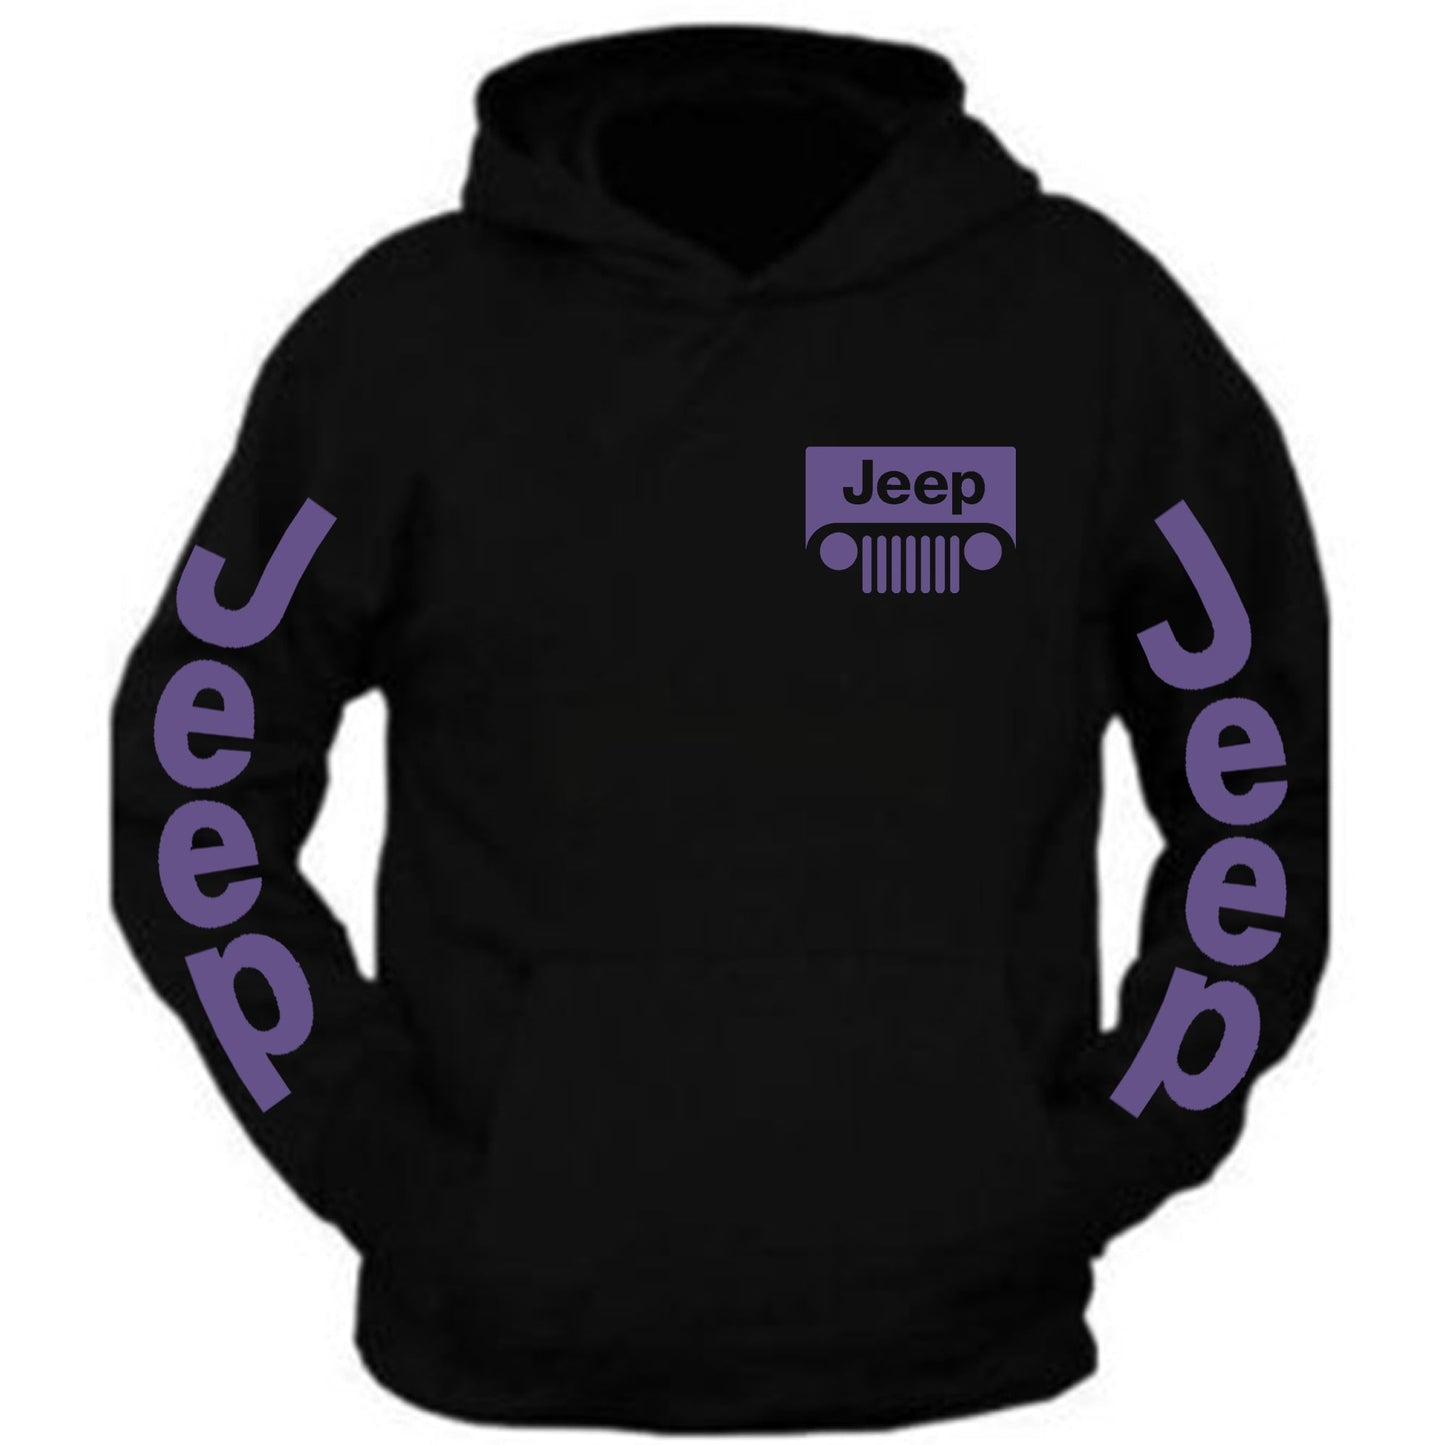 New All Colors Jeep tee Black Hoodie S-2XL 4x4 Off Road Black Hoodie Hooded Sweatshirt